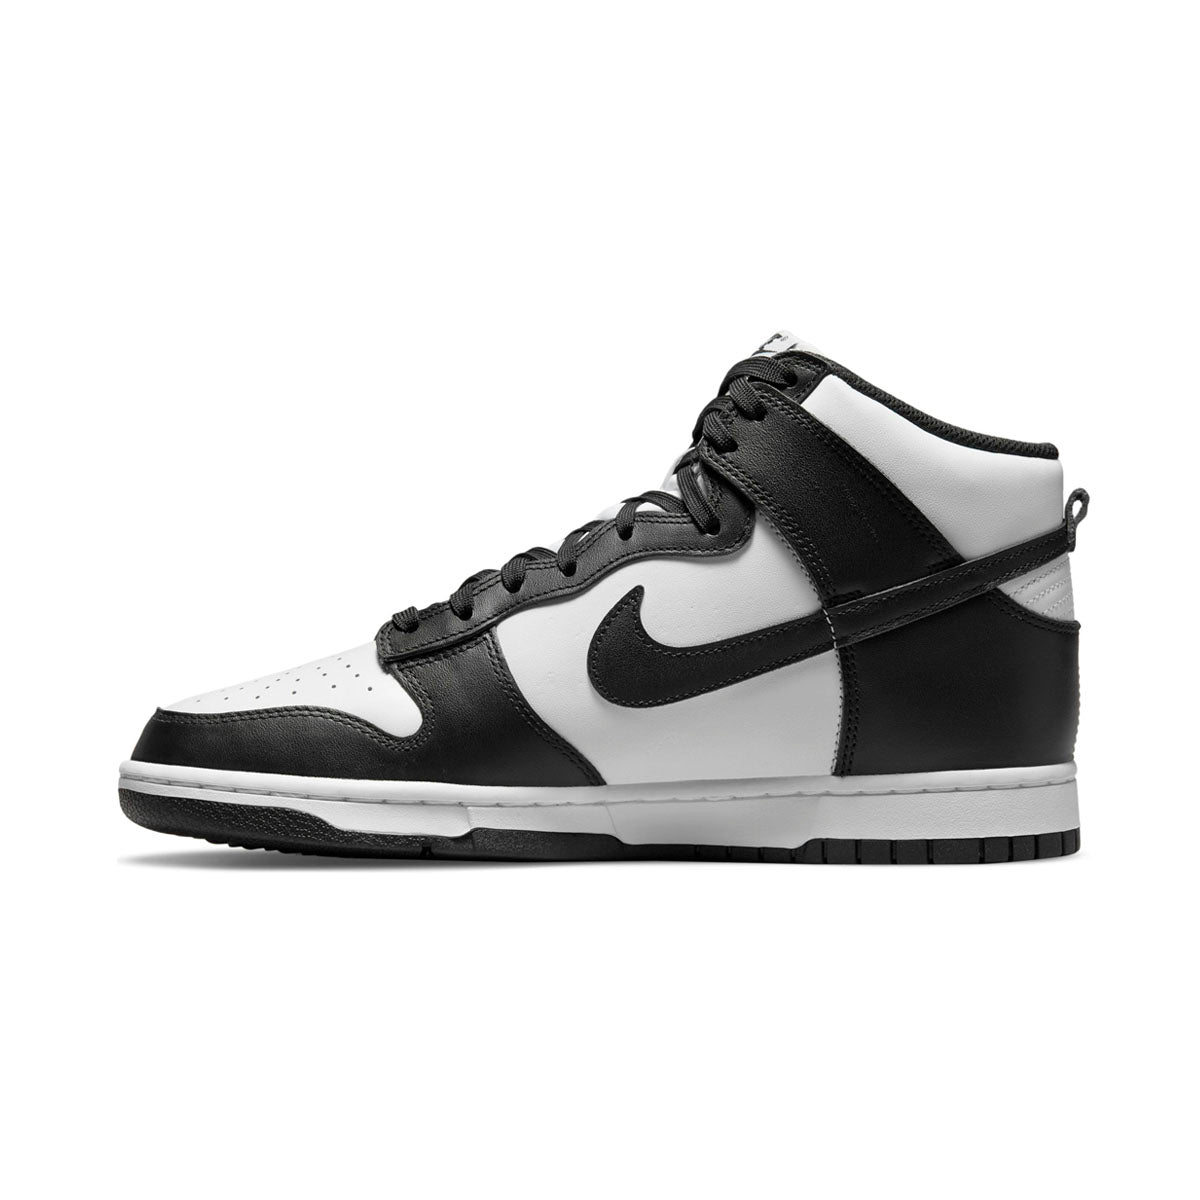 Nike mens air jordan reveal 834064-003 gray basketball shoes sneakers Men's Shoe